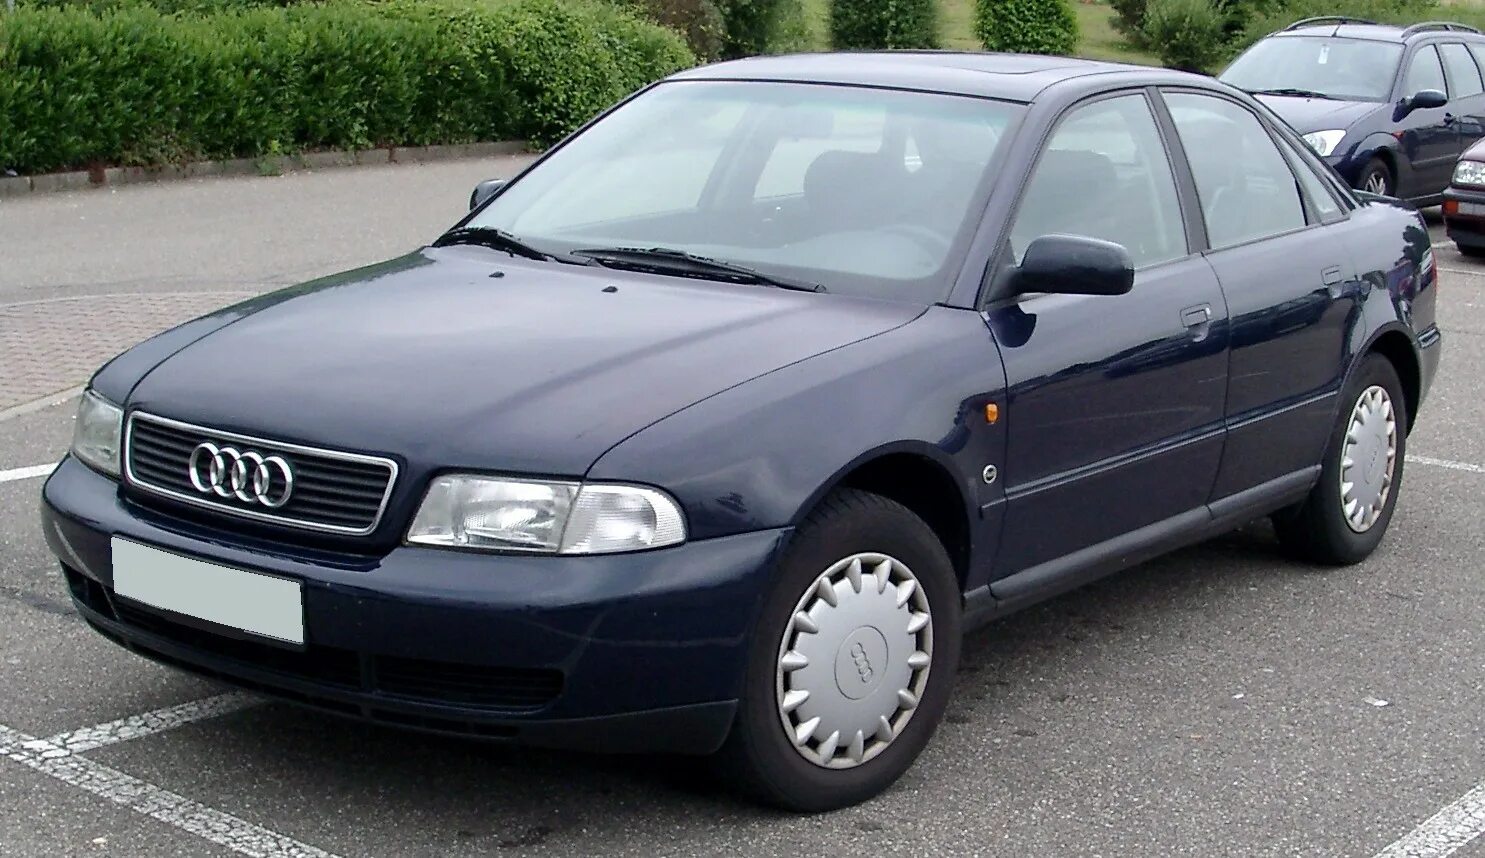 Audi a4 b5 1996. Audi a4 b5 2000. Ауди а4 б5 1996. Audi a4 b5 1995. Ауди а4 б5 2000 года